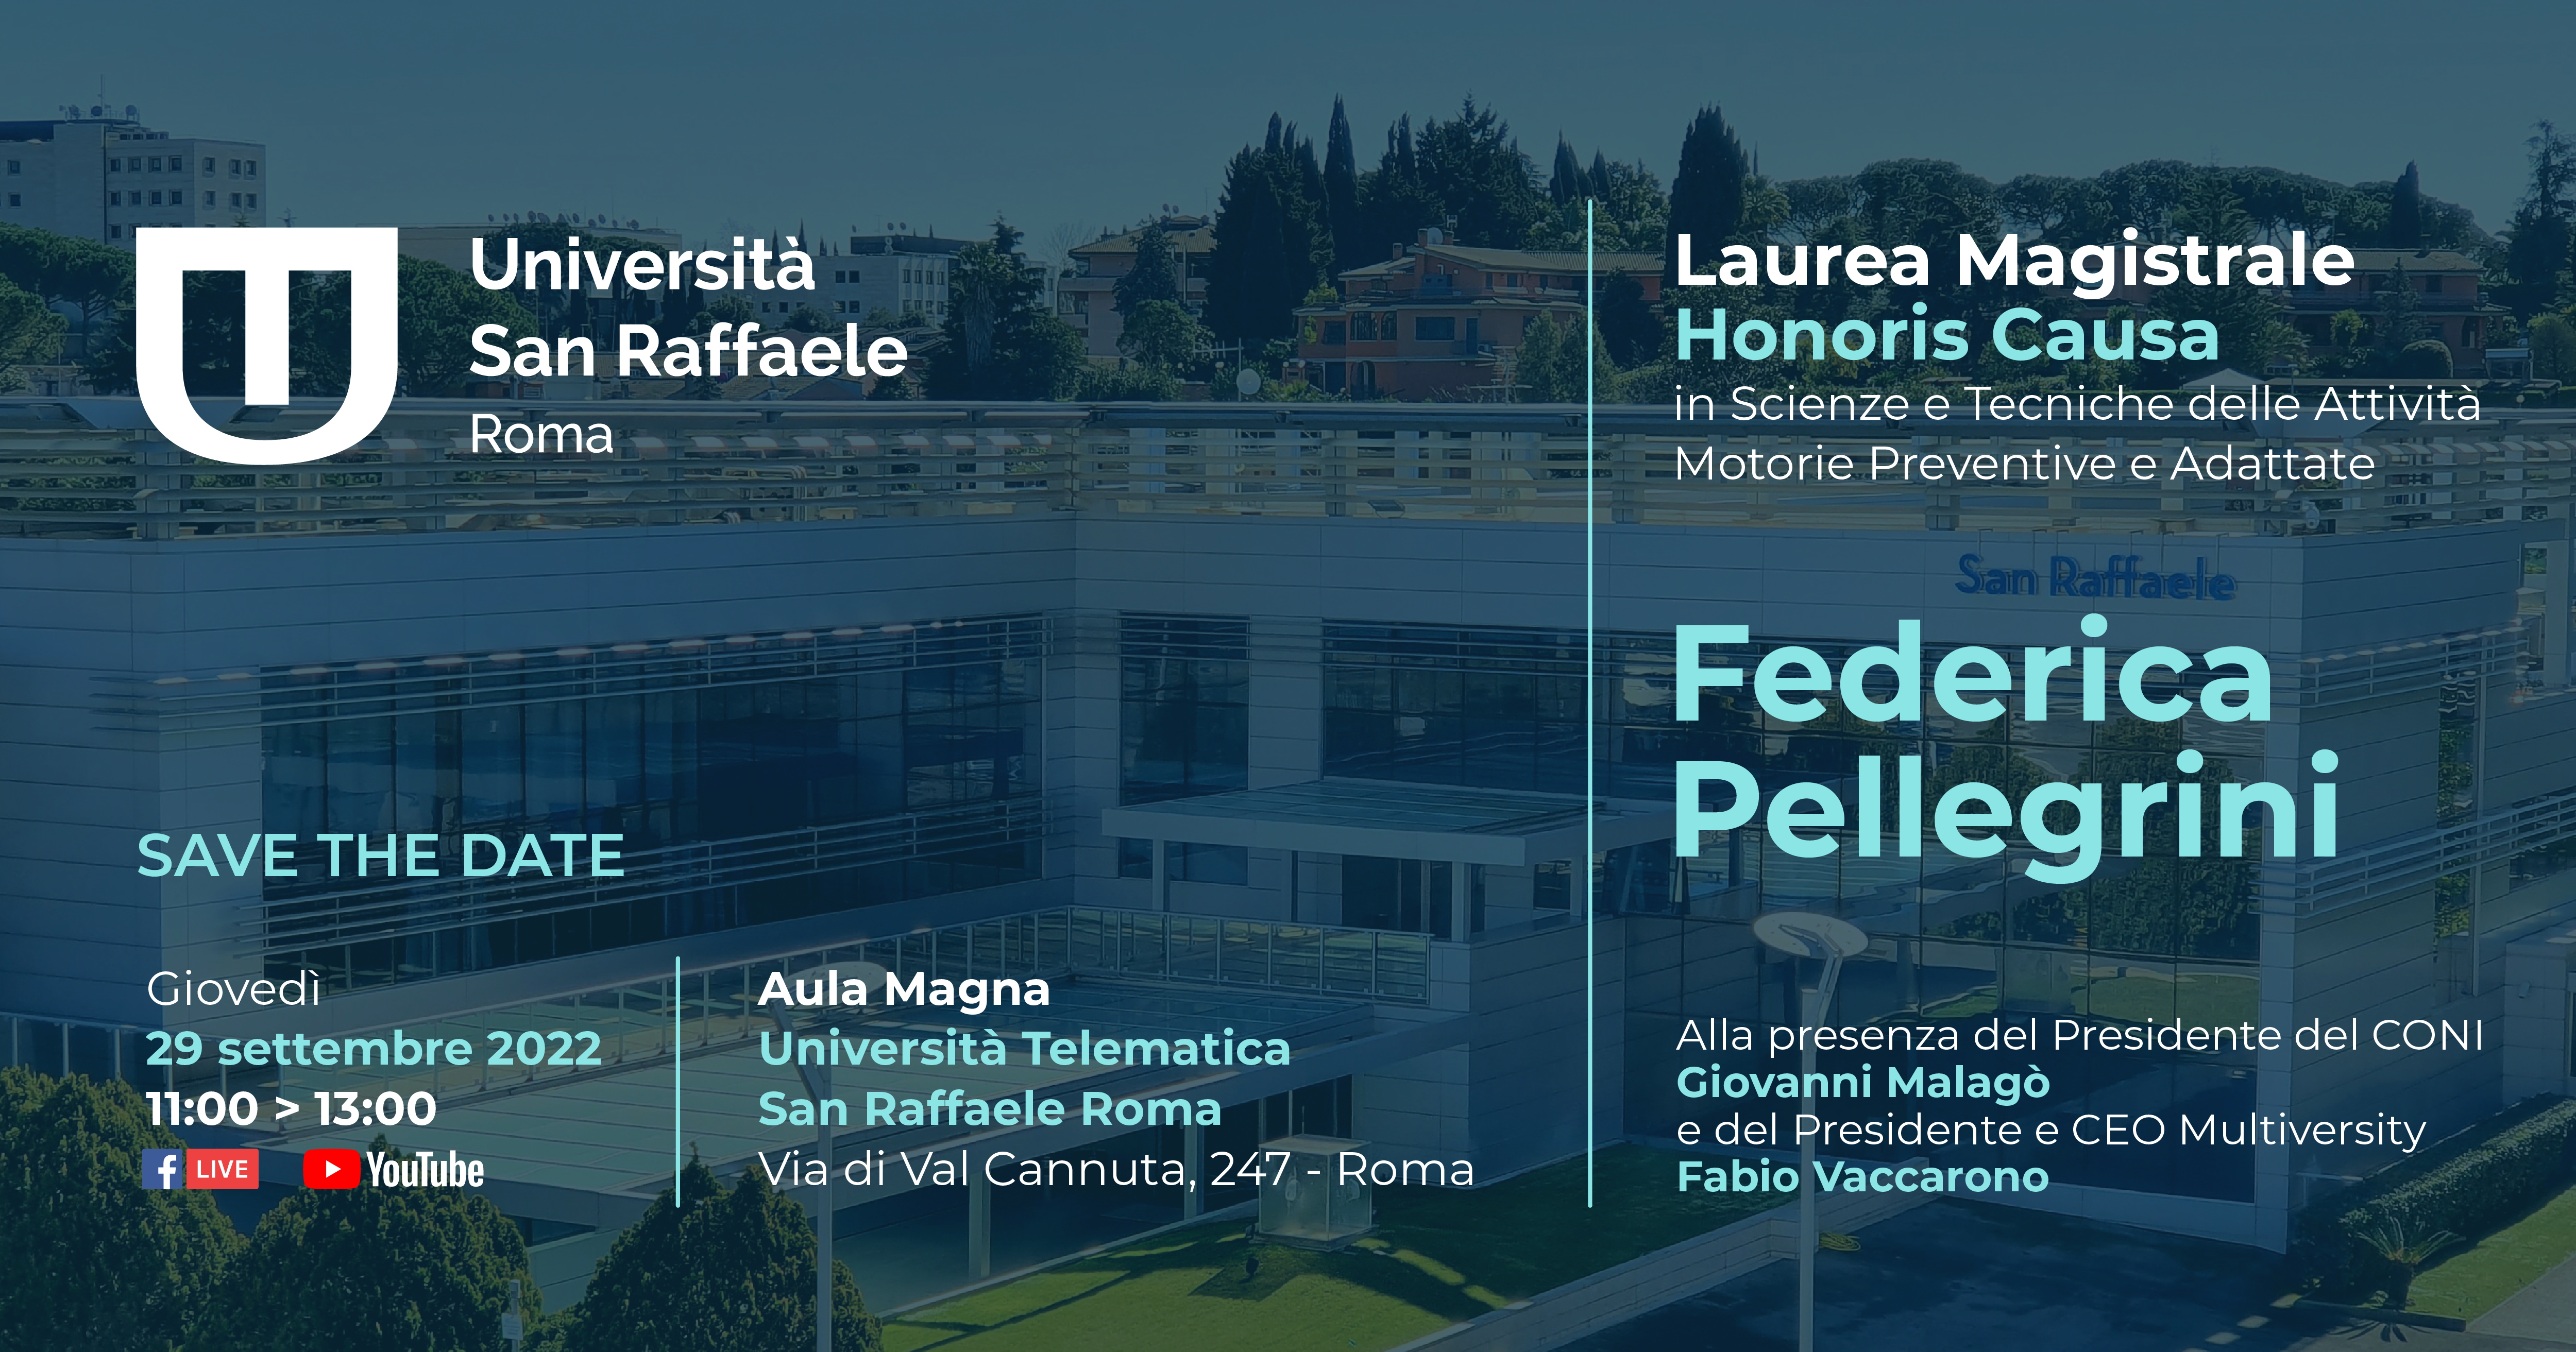 Federica Pellegrini Laurea Honoris Causa in Scienze e Tecniche delle Attività Motorie Preventive e Adattate dall'Università San Raffaele Roma